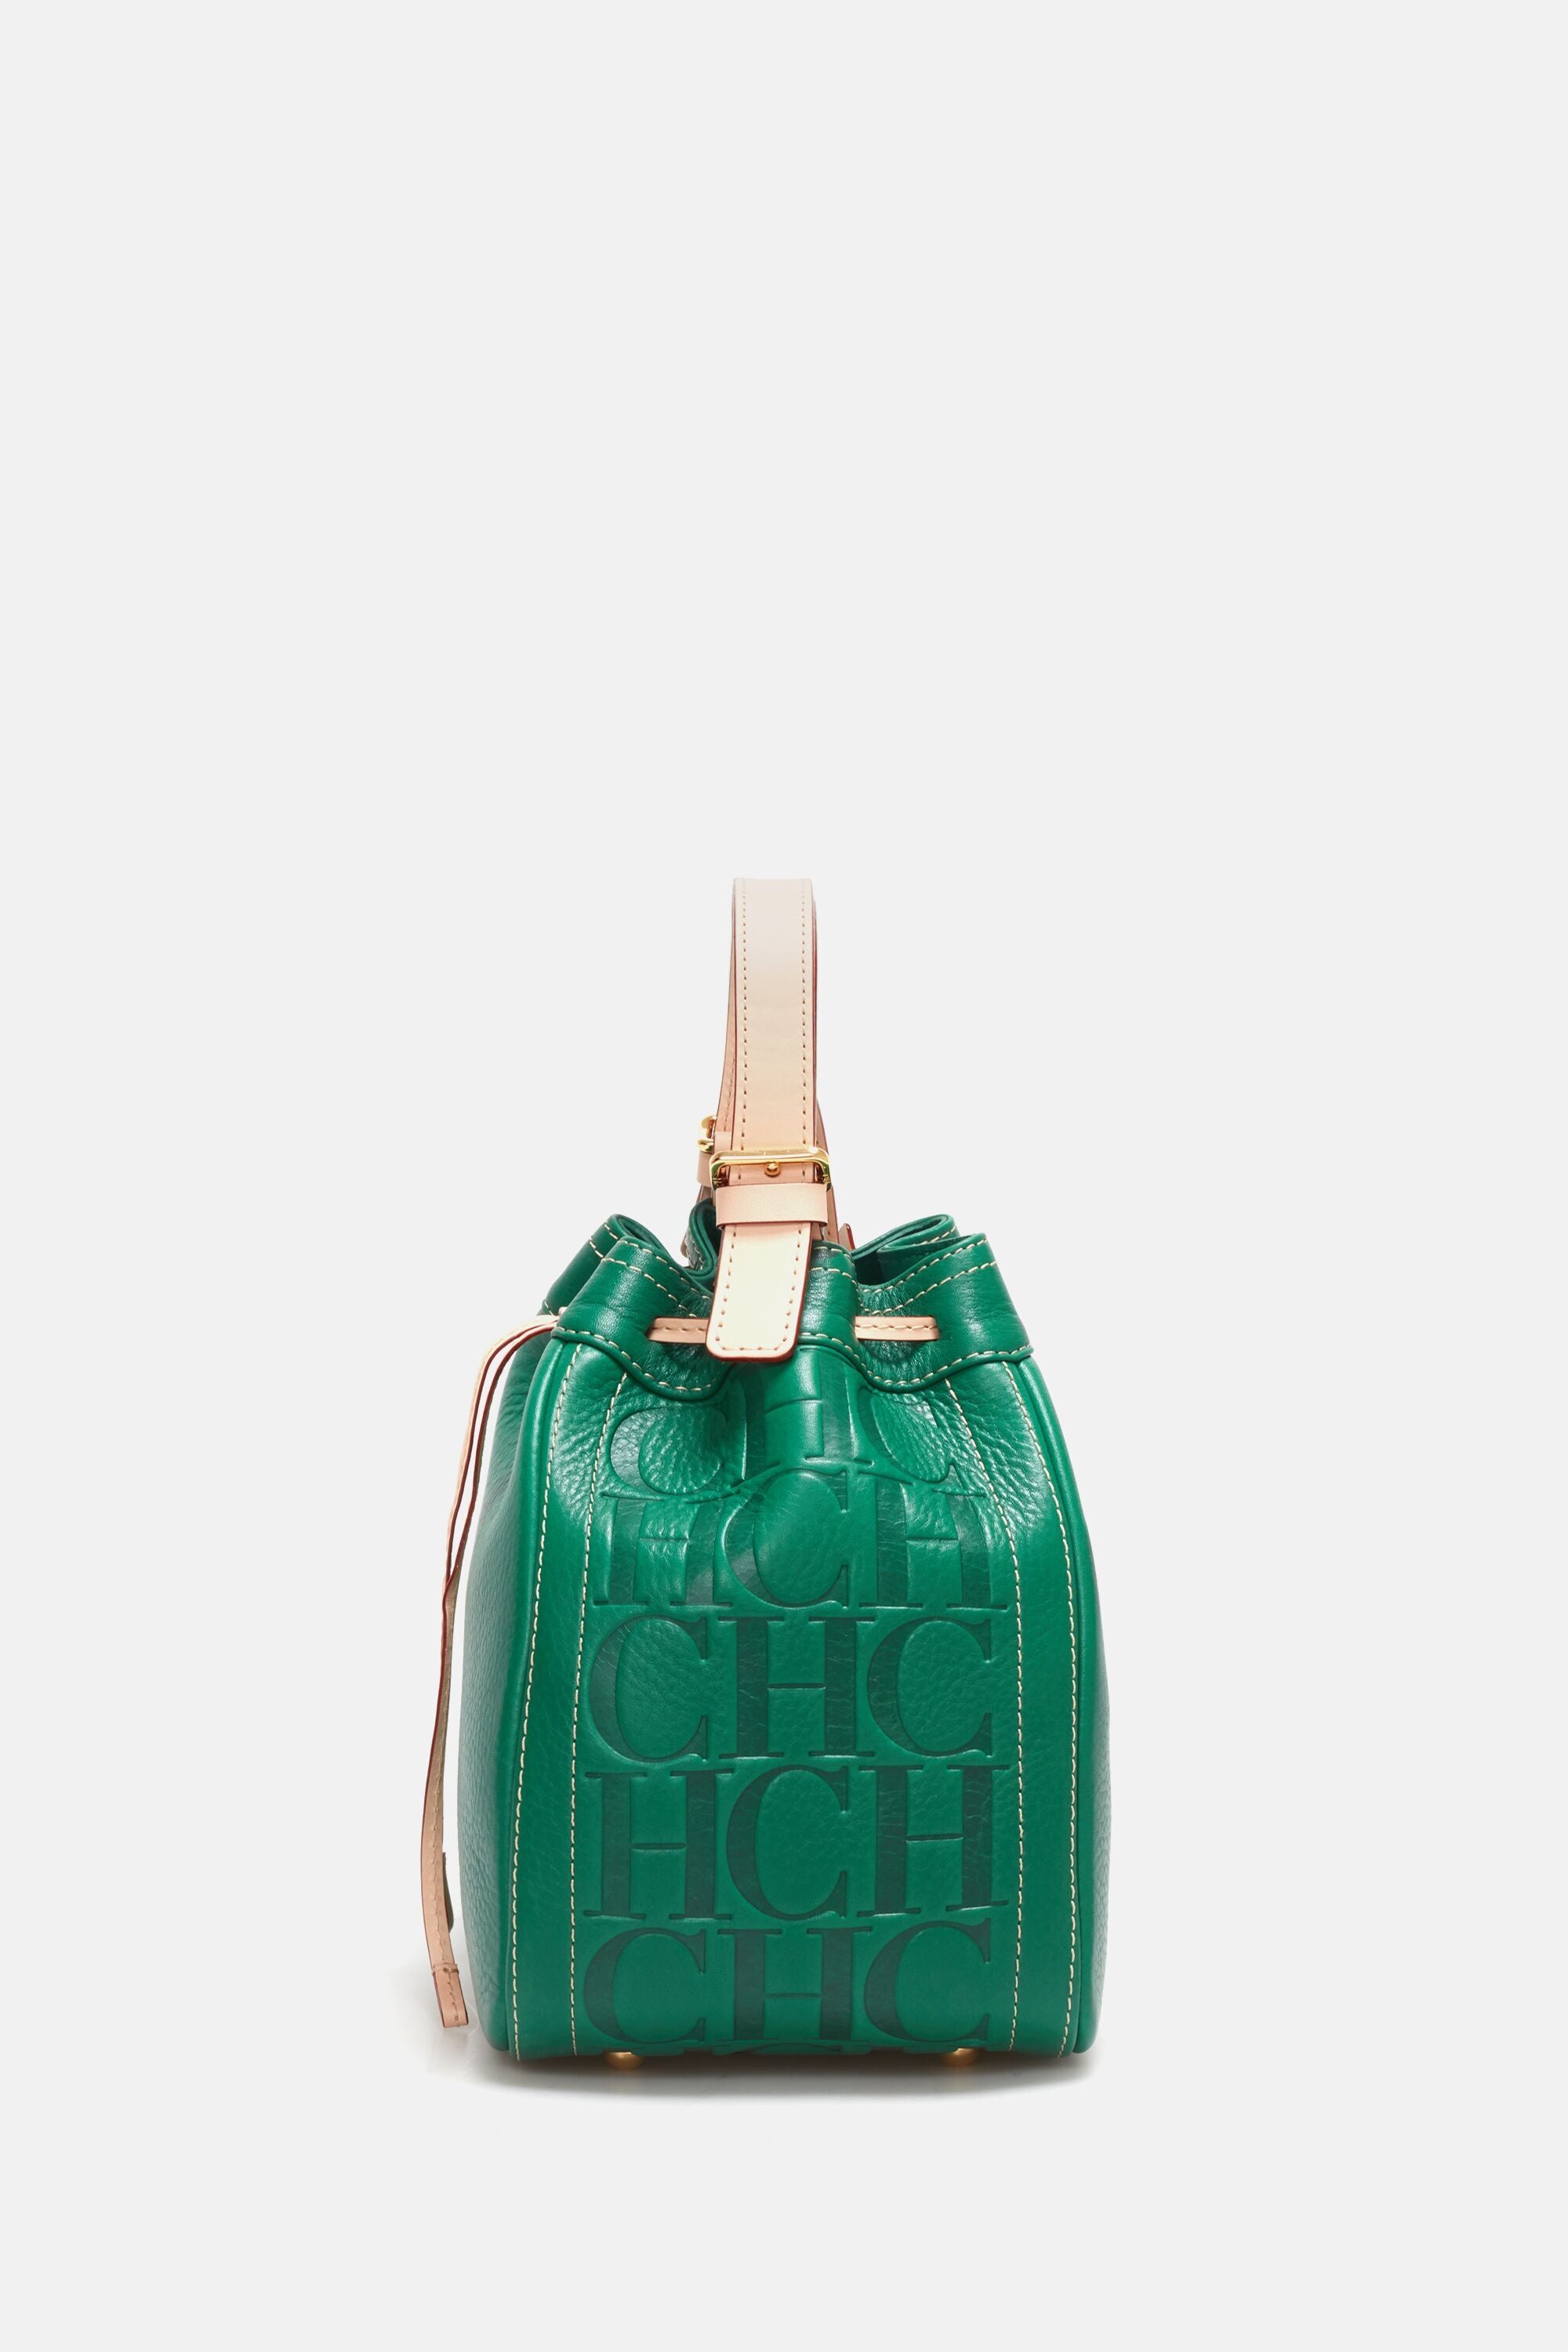 Scala Insignia  Small clutch emerald green - CH Carolina Herrera